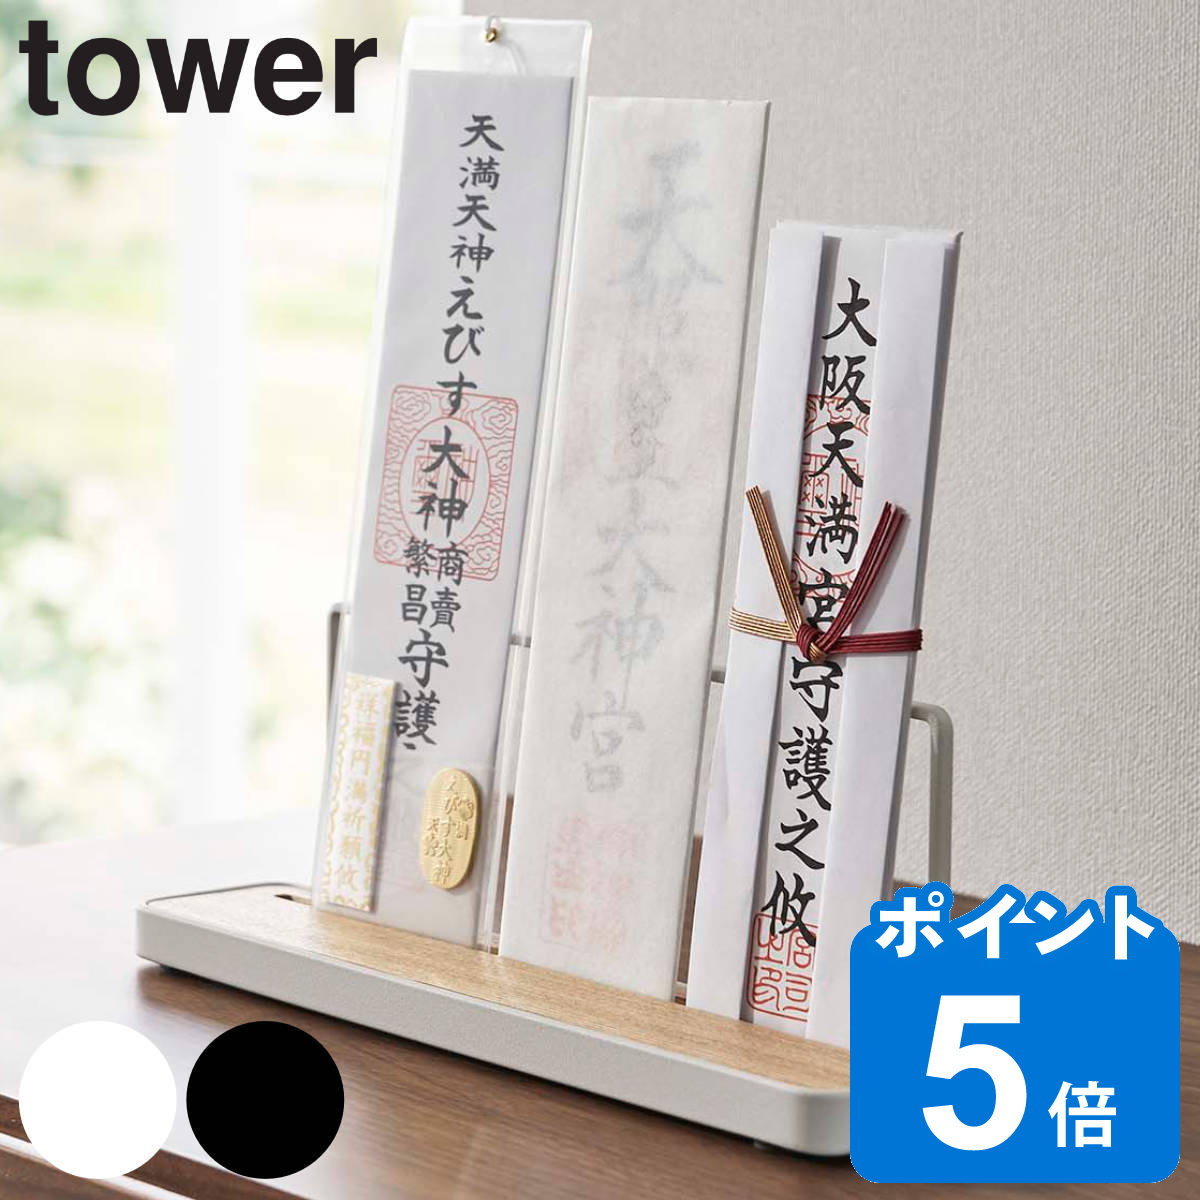 tower 神札スタンド タワー